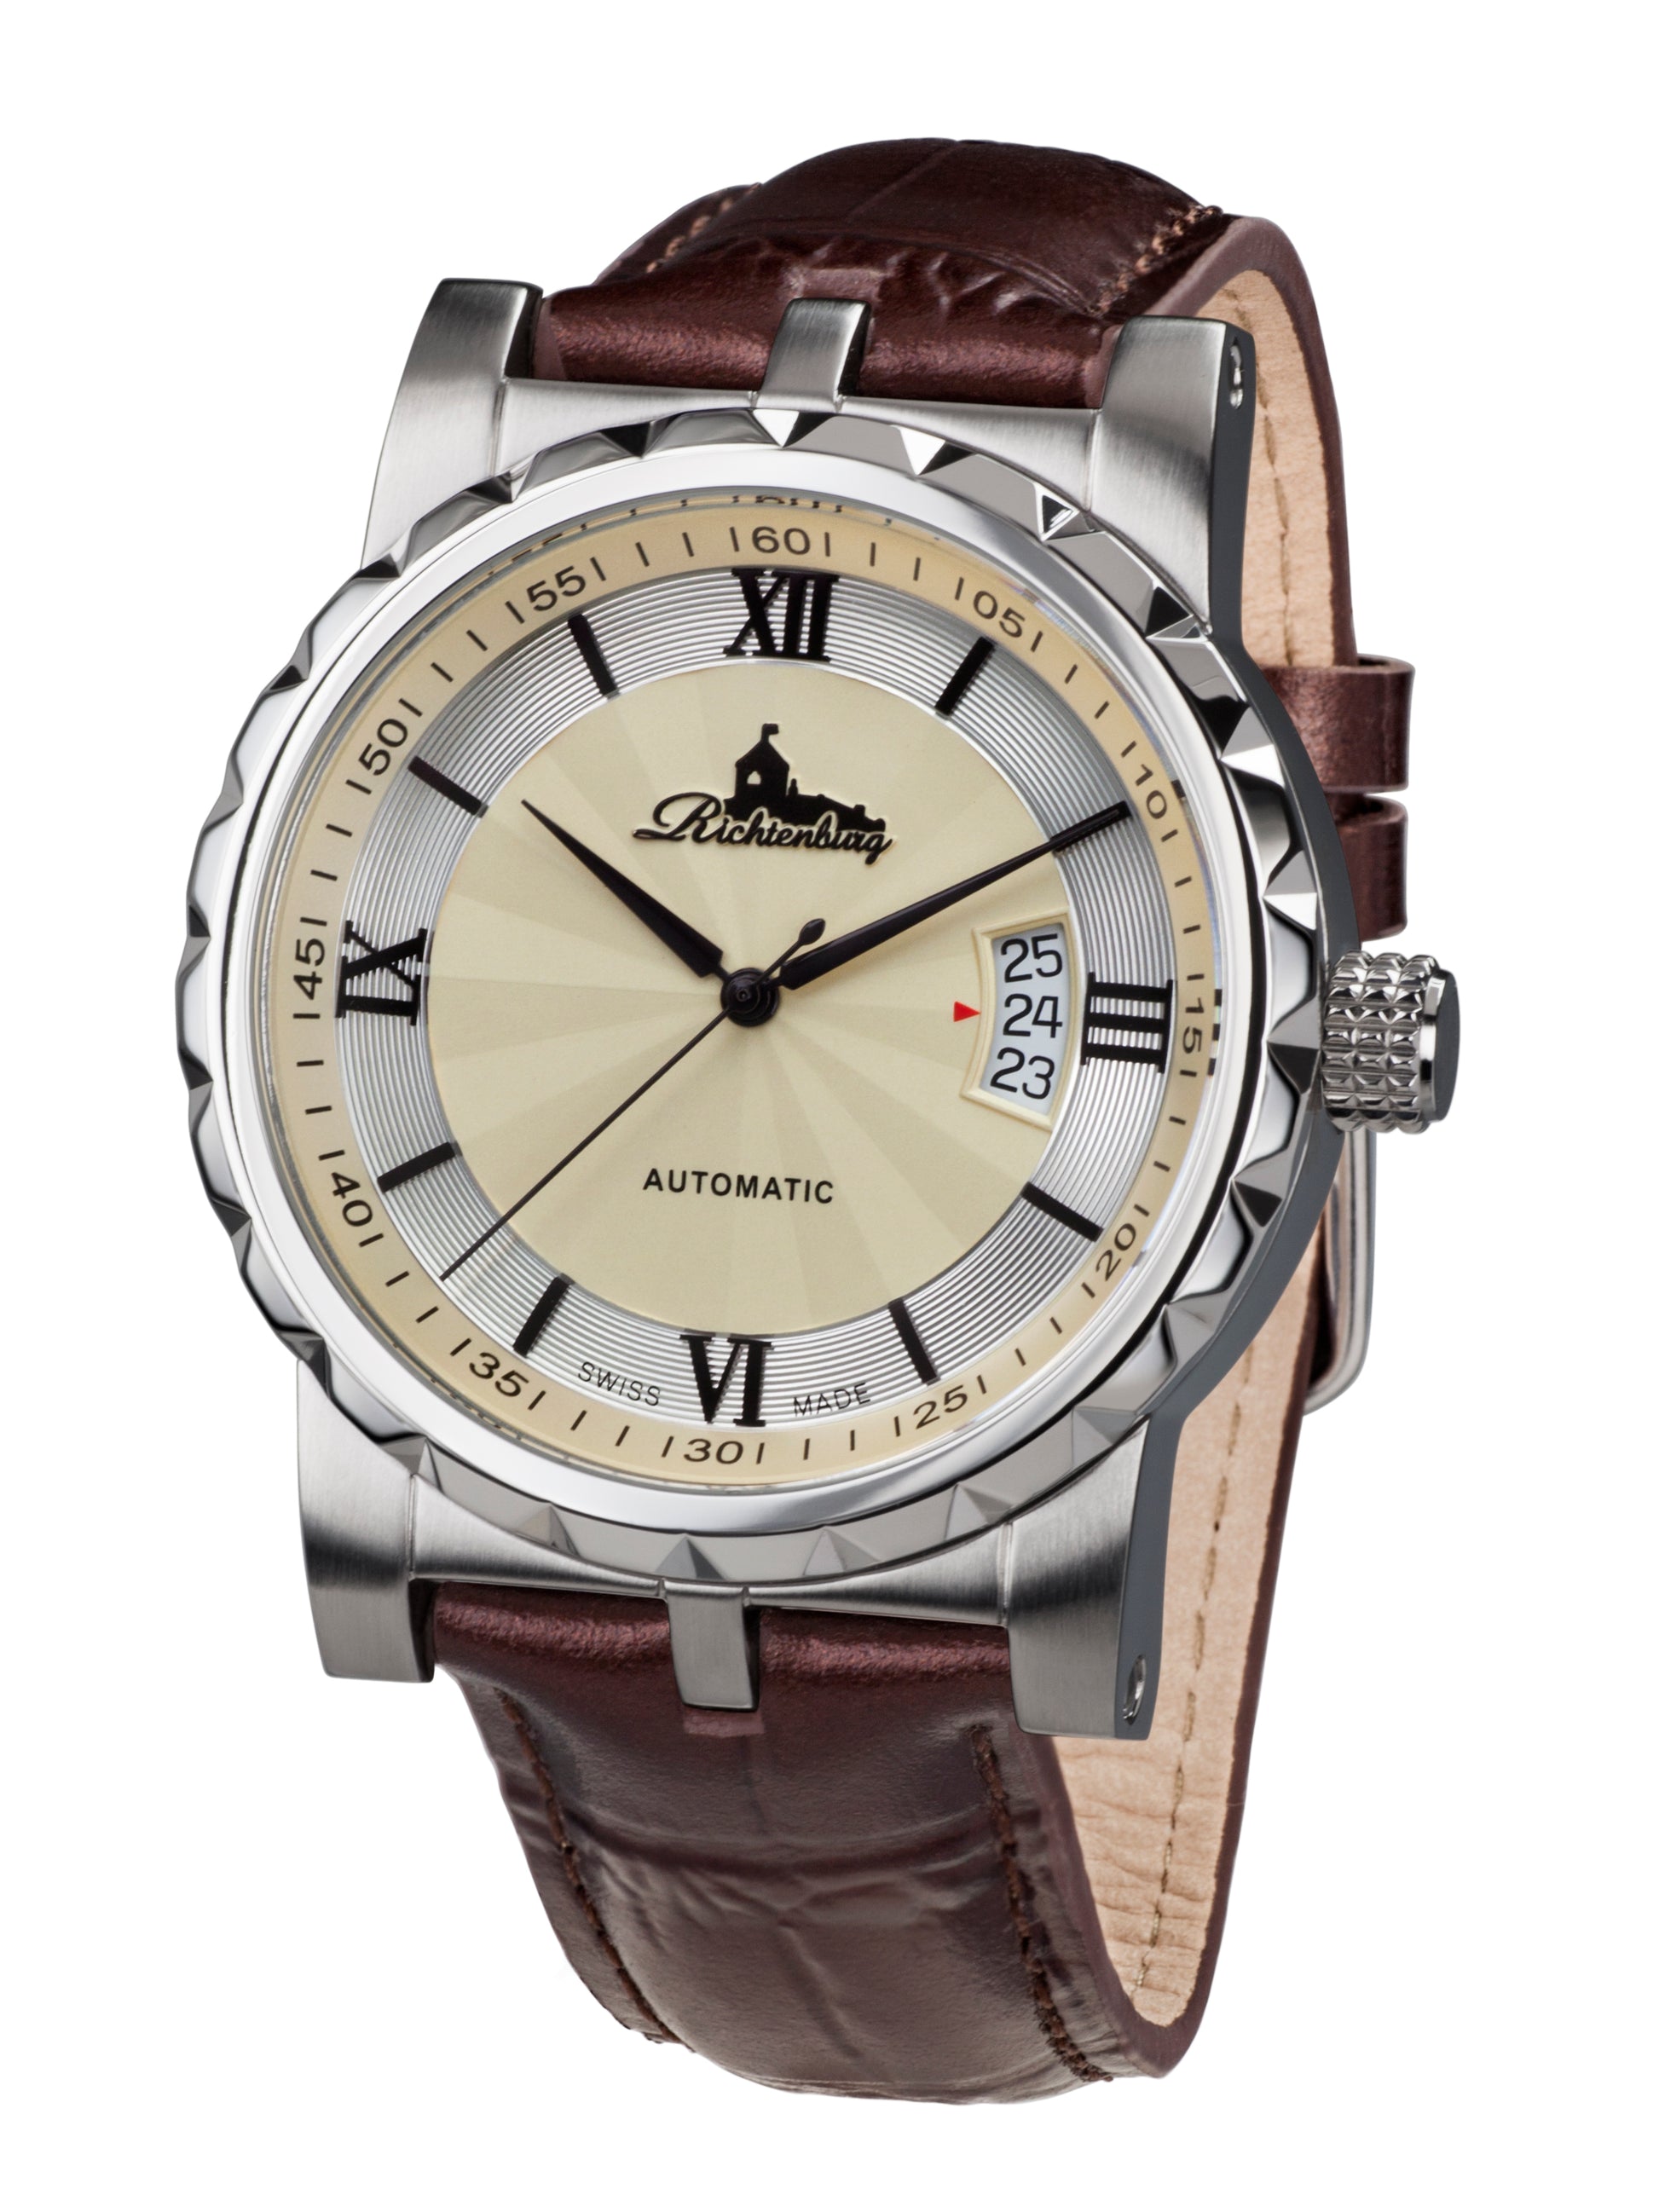 Automatic watches — Lugano — Richtenburg — brown